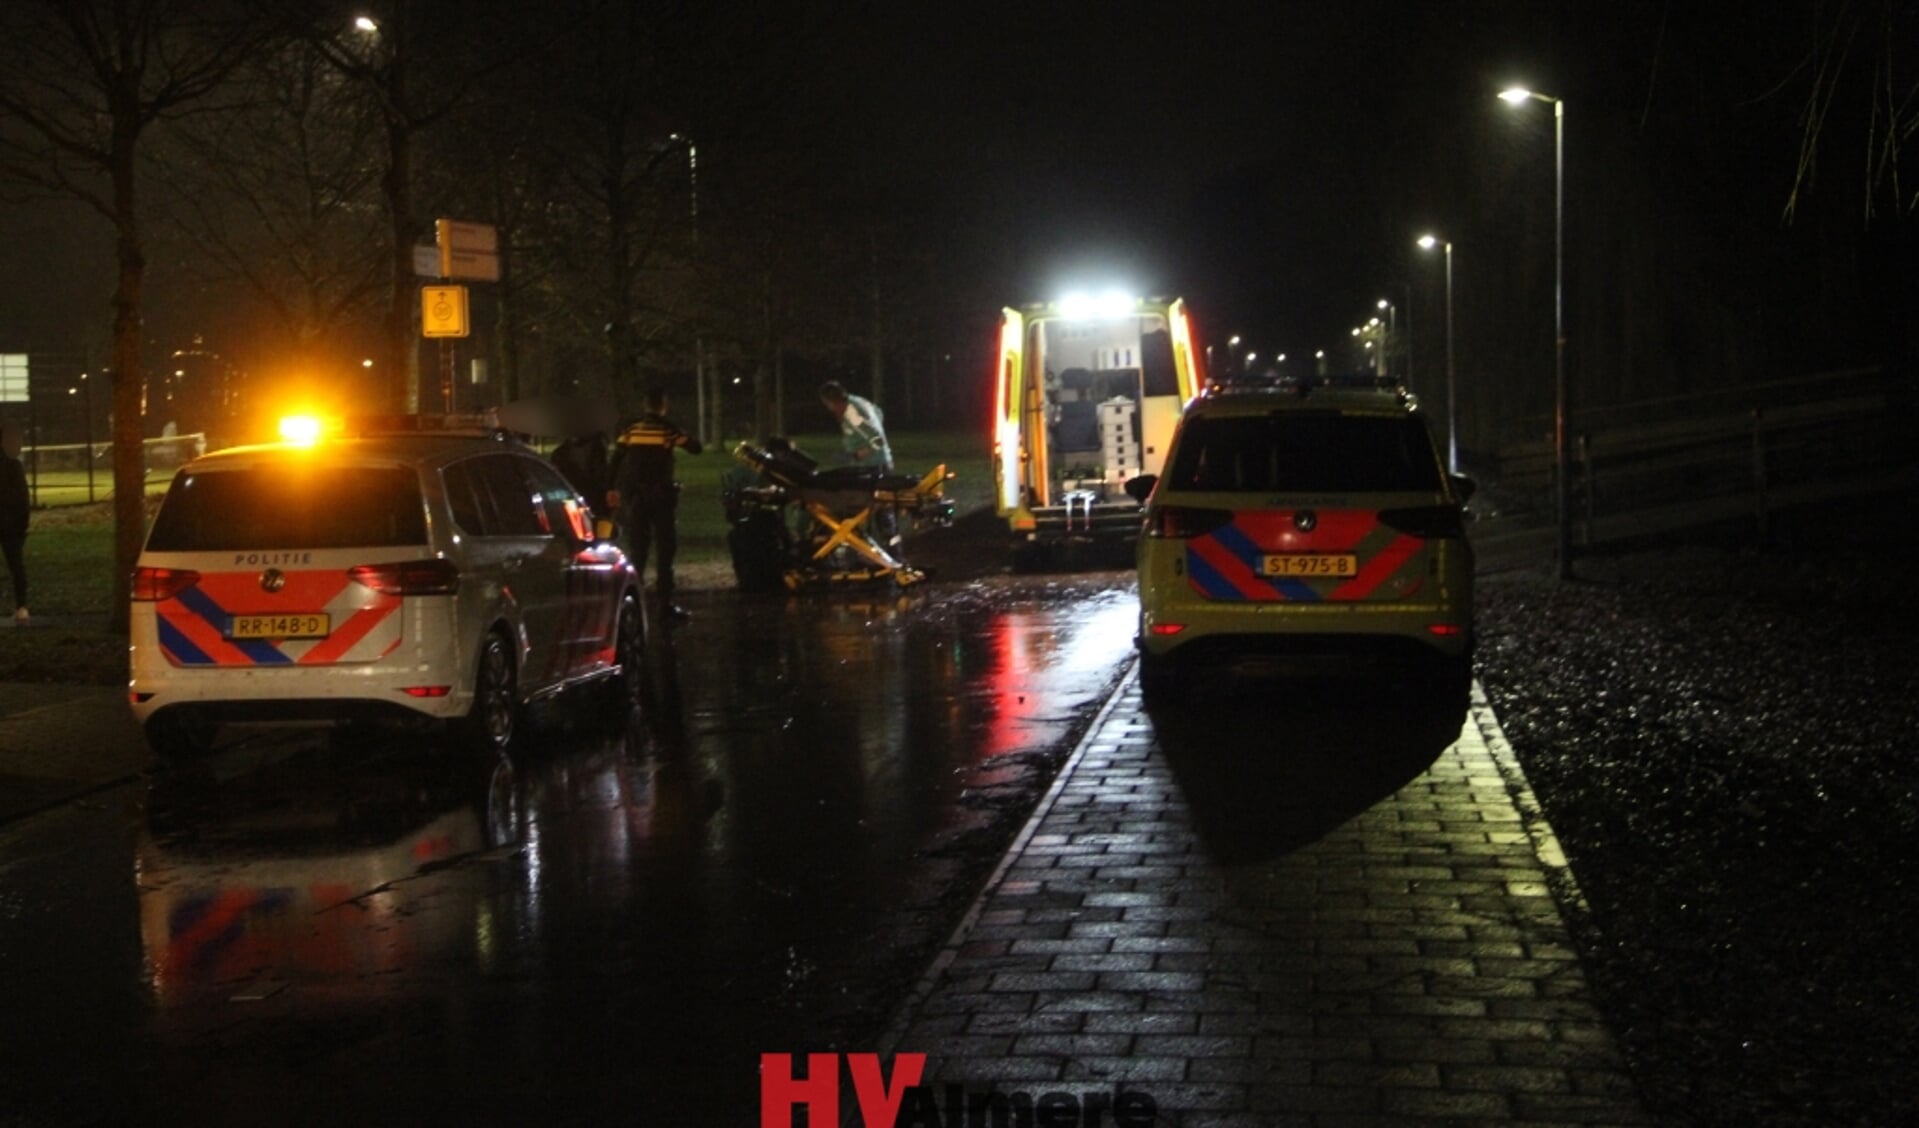 Het ongeval gebeurde in december. Politie zoekt getuiigen. (Foto: HV Almere)